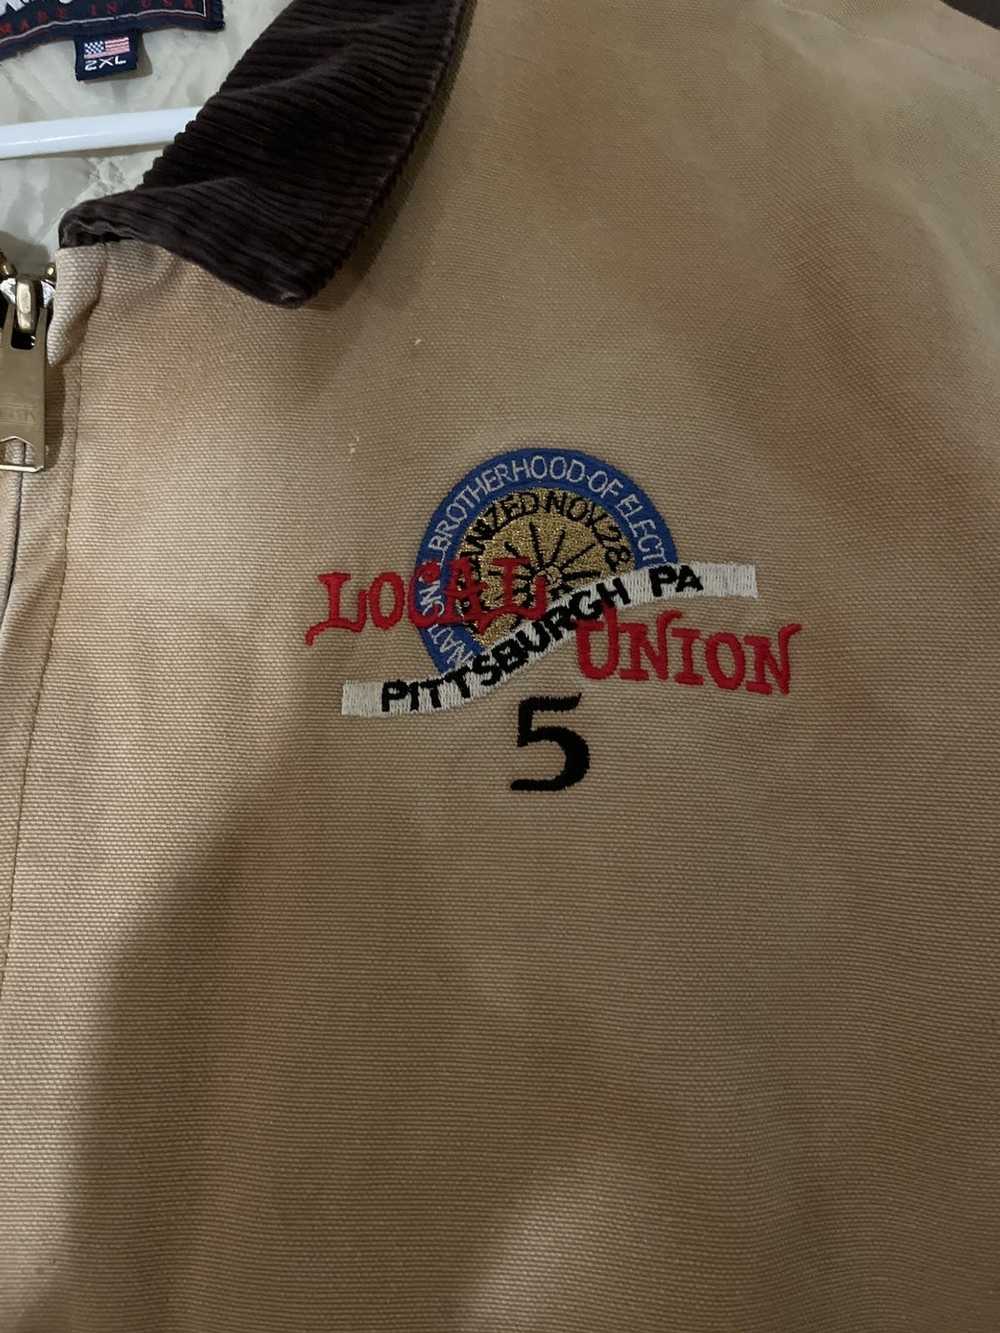 Vintage King Louie union jacket - image 2